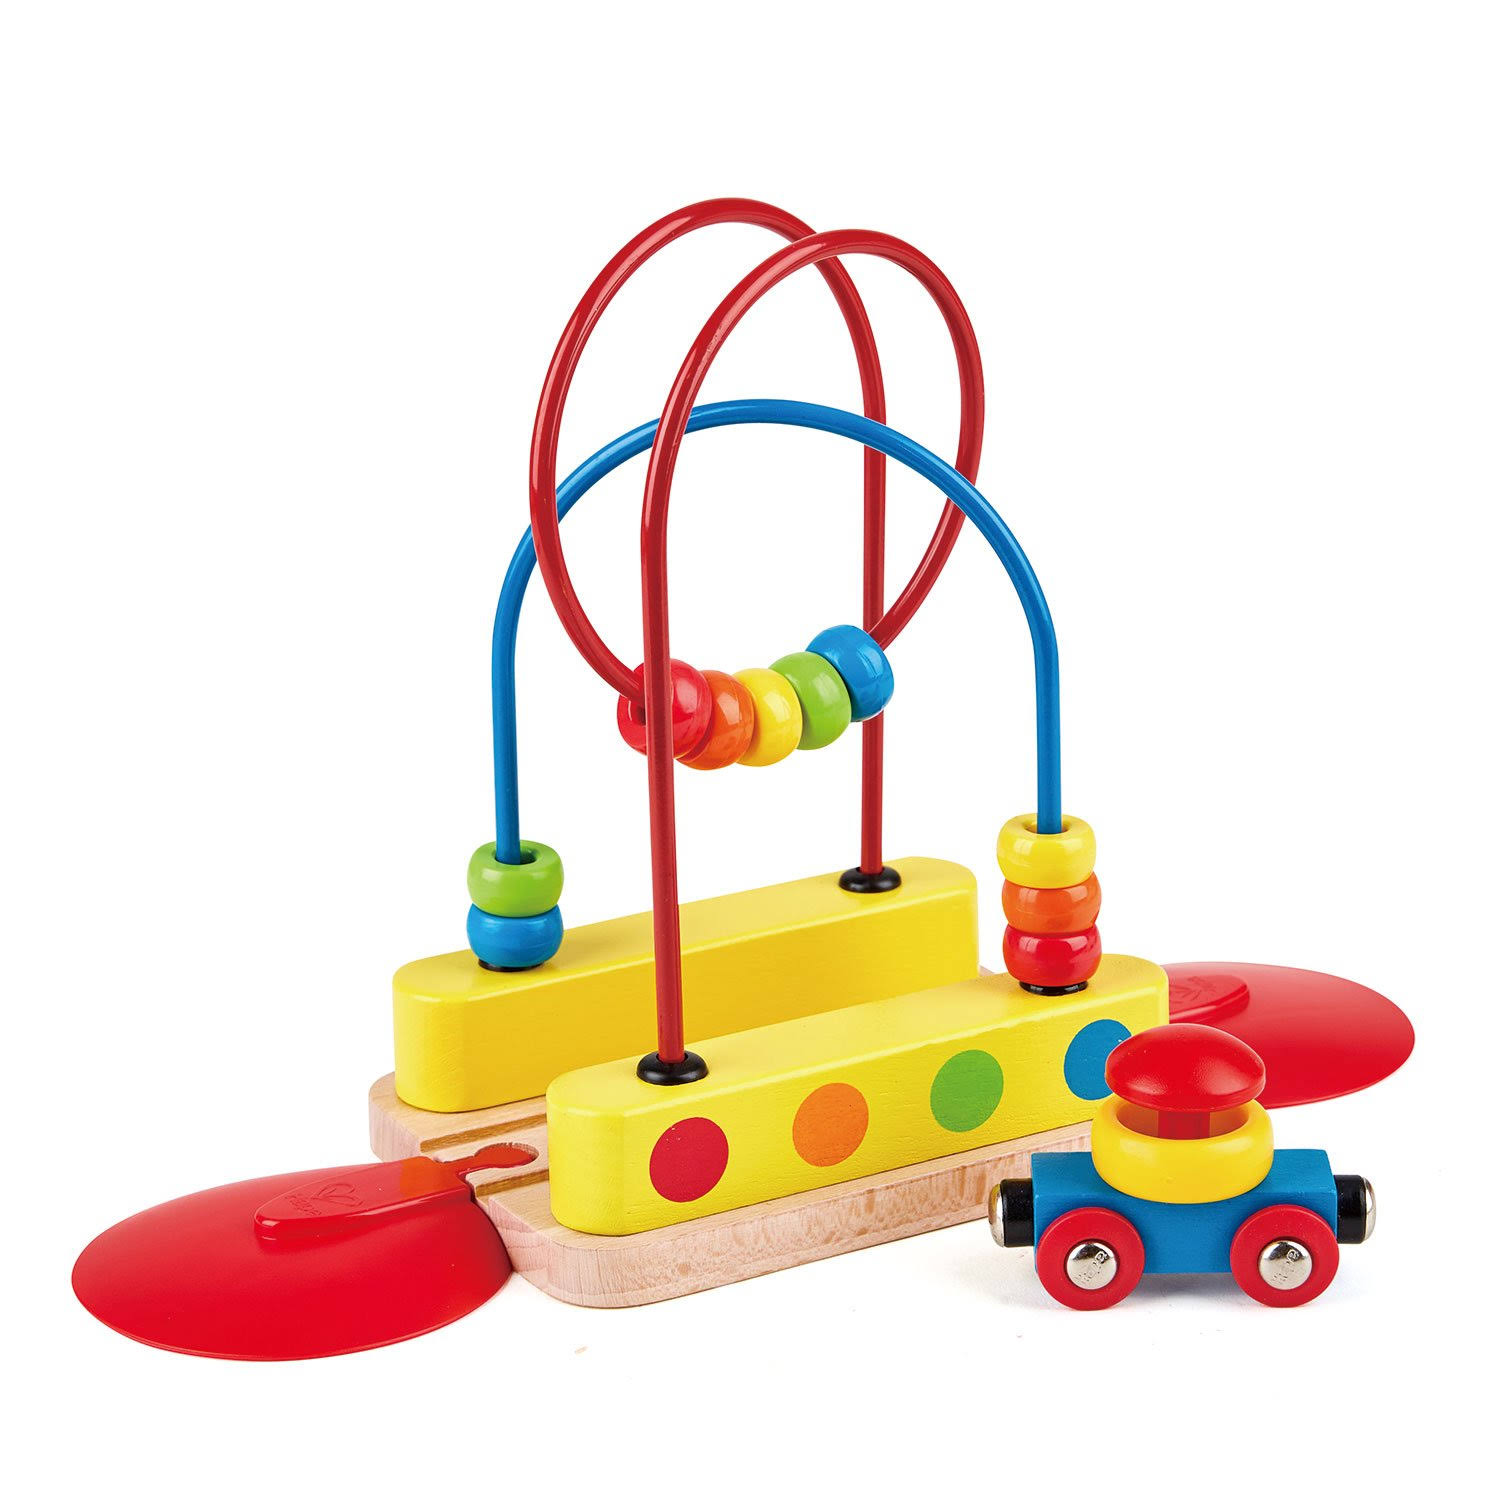 Hape Bead Maze Rainbow Track Railway Toy - 18+ Month